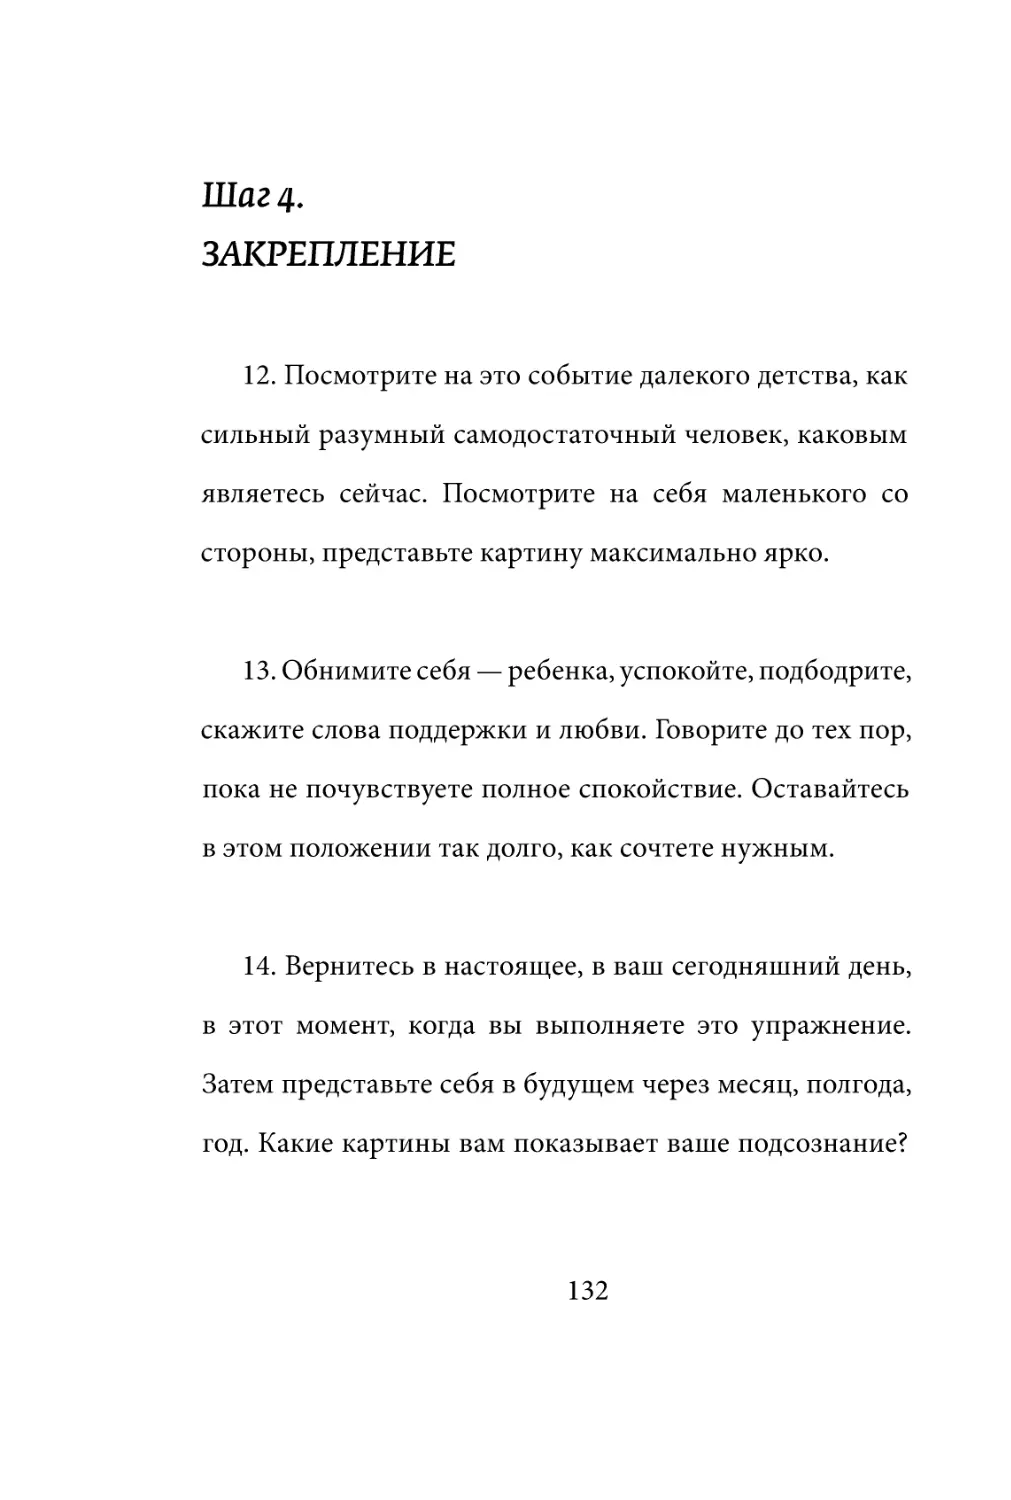 Sergey_Filippov_Dnevnik_samorazvitia_Evolyutsia_Vnutrennego_Sostoyania_132.pdf (p.132)